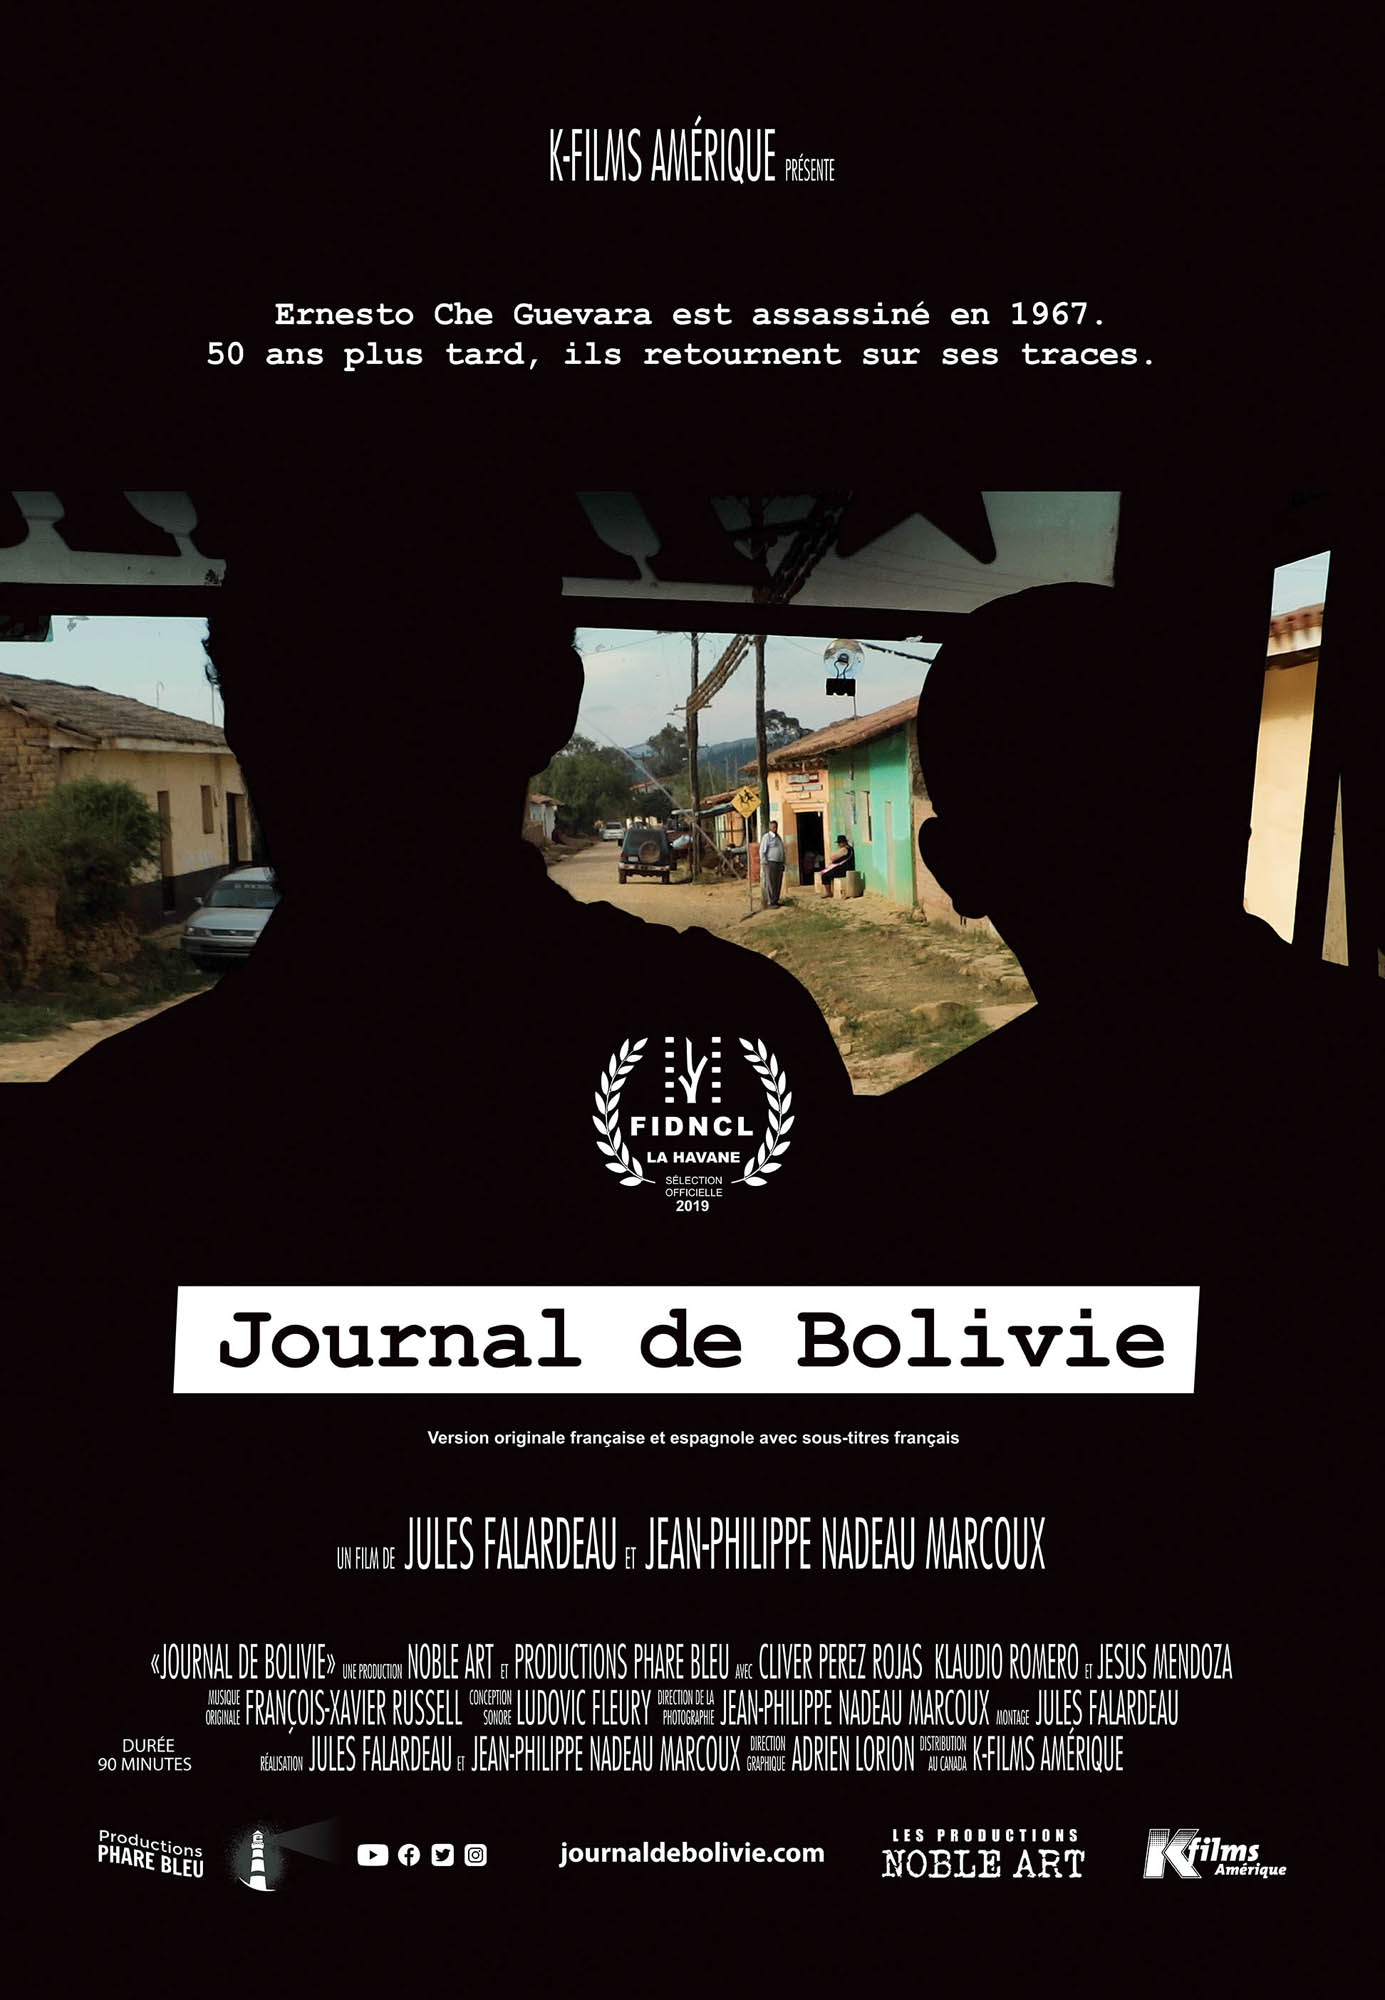 JOURNAL DE BOLIVIE